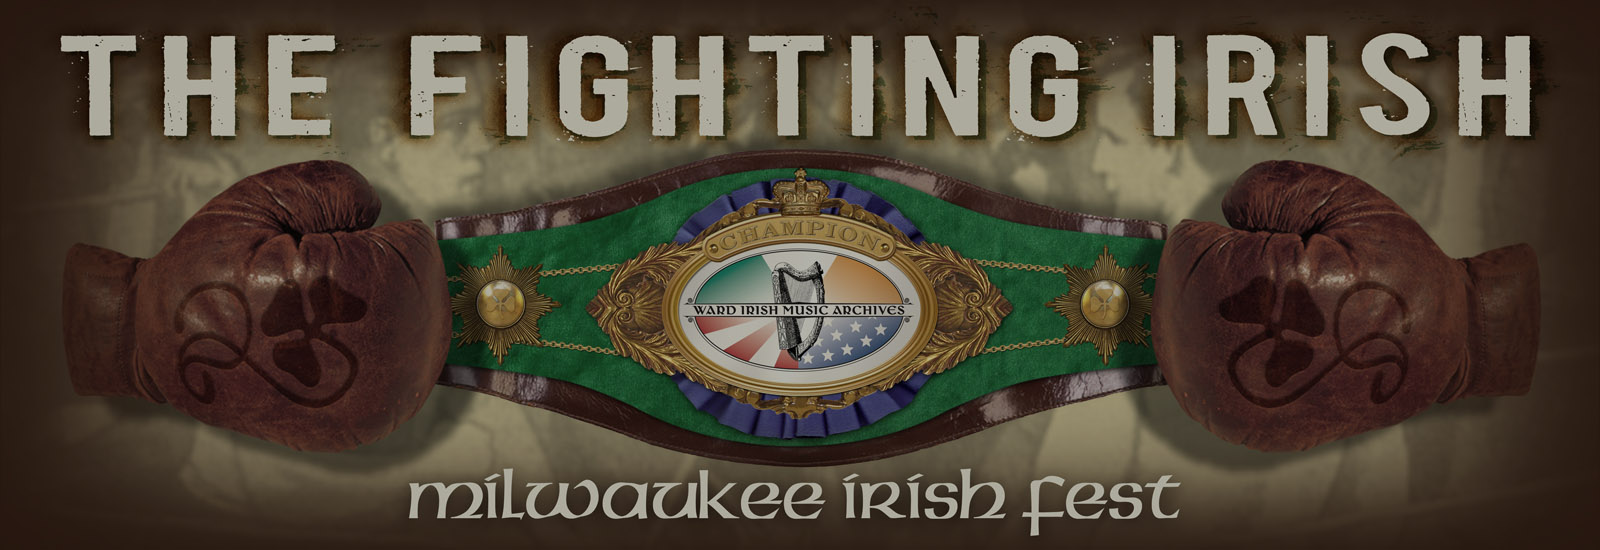 The Fighting Irish Boxing Exhibit